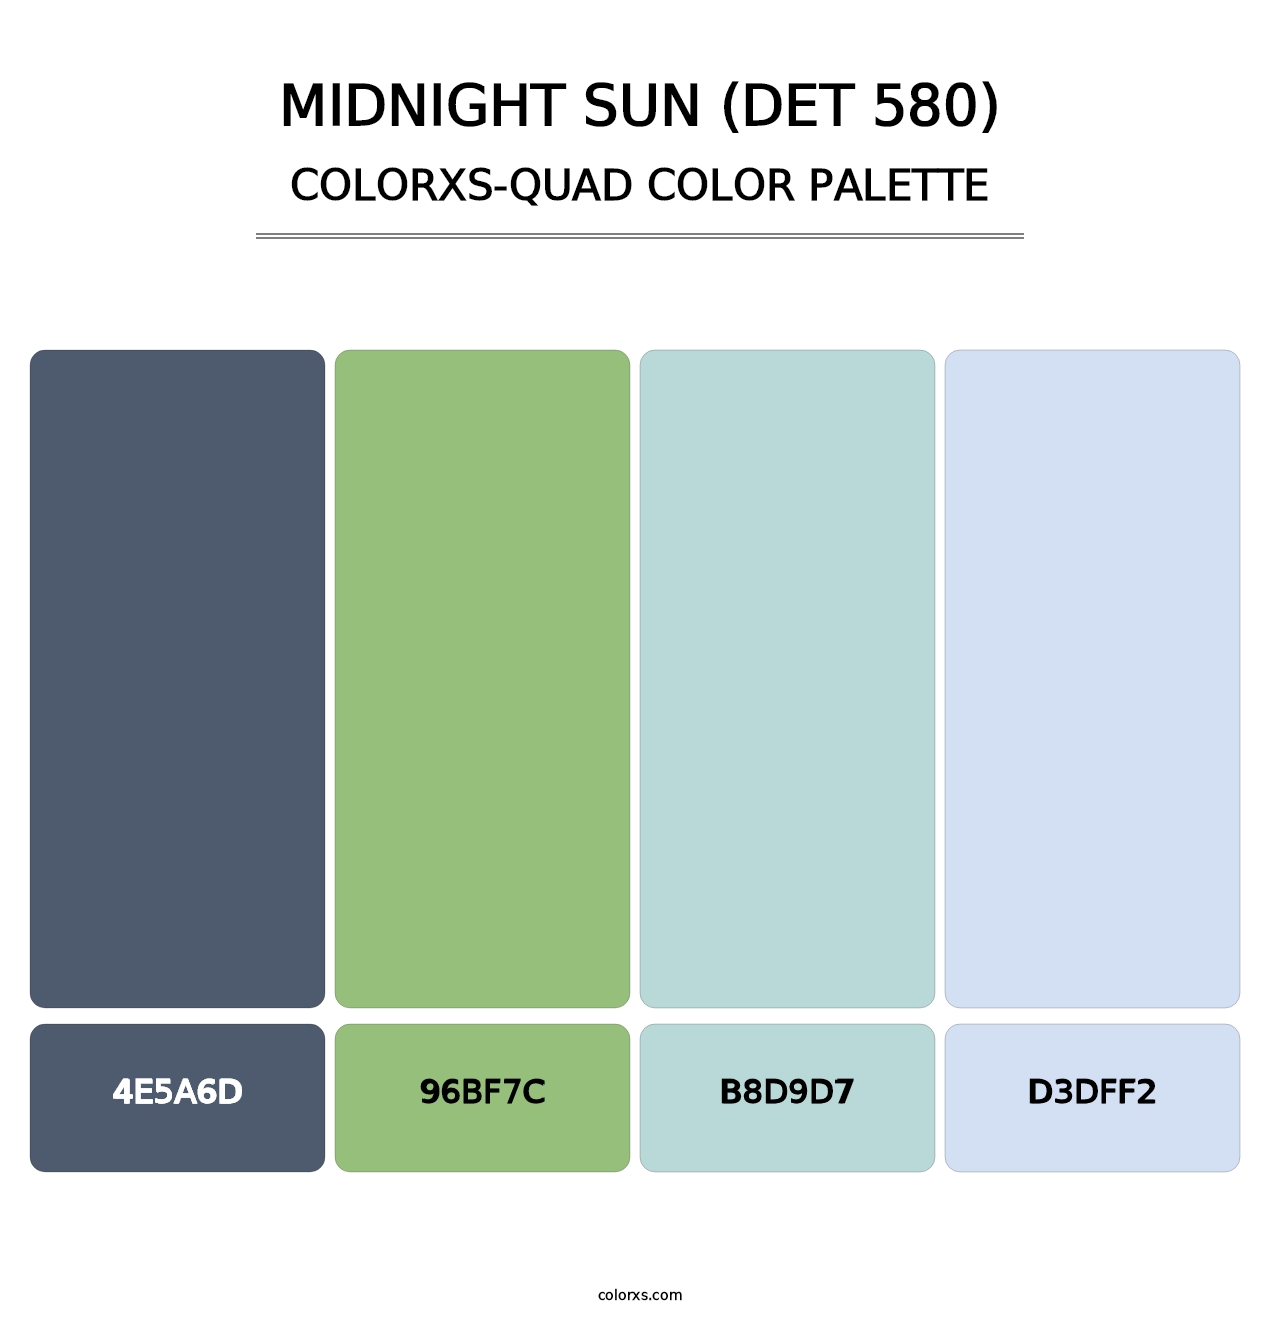 Midnight Sun (DET 580) - Colorxs Quad Palette